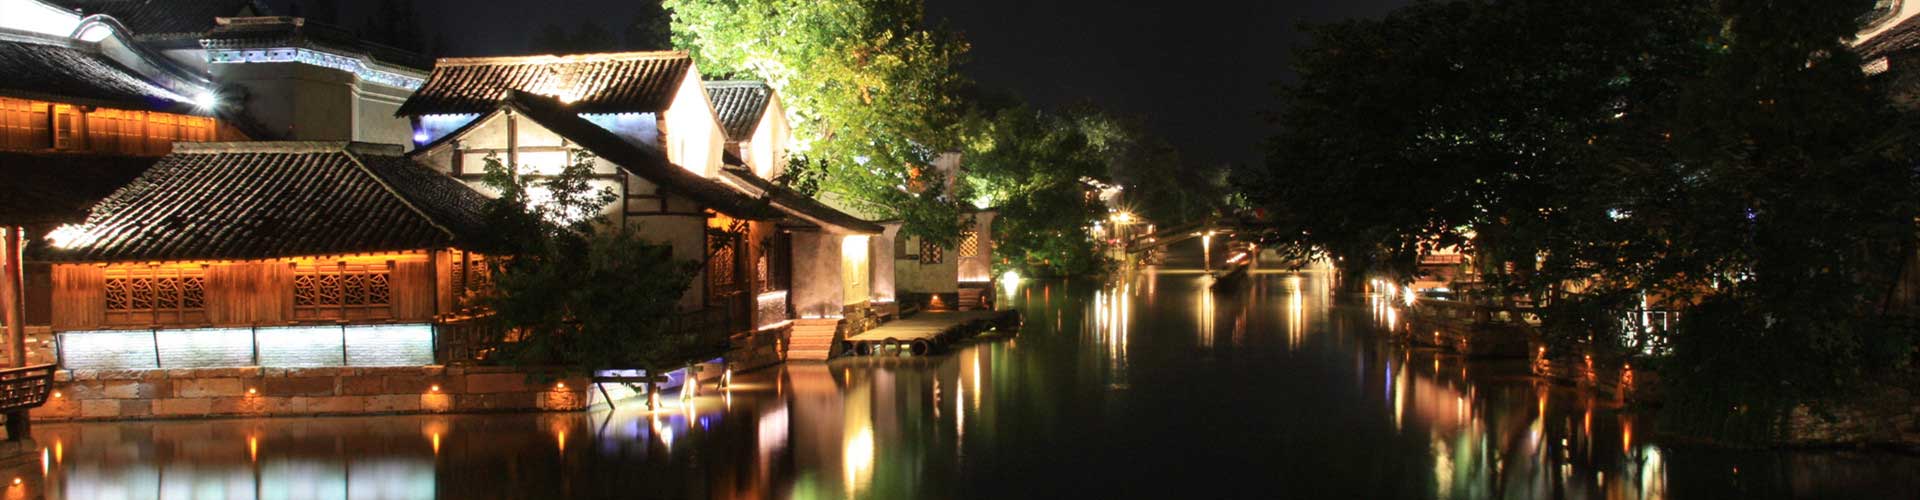 Pueblo de Agua de Wuzhen Viajes a Hangzhou